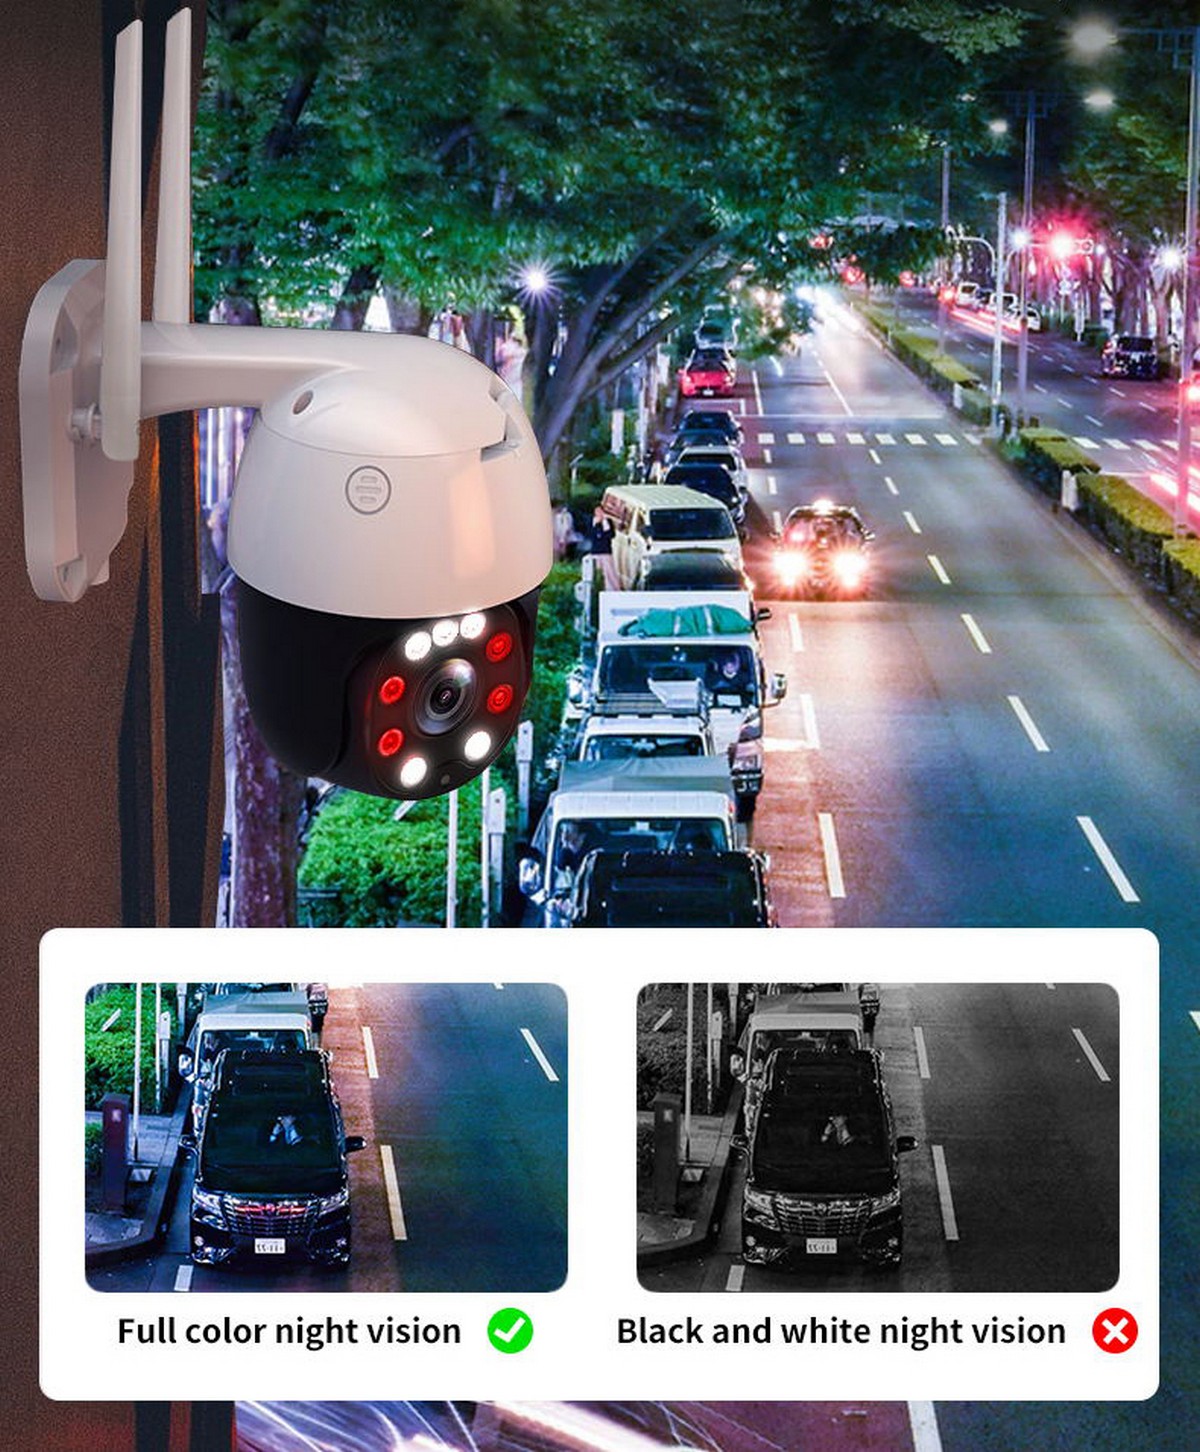 vollfarbige bunte Nachtsicht-IP-Kamera auf einem Haus